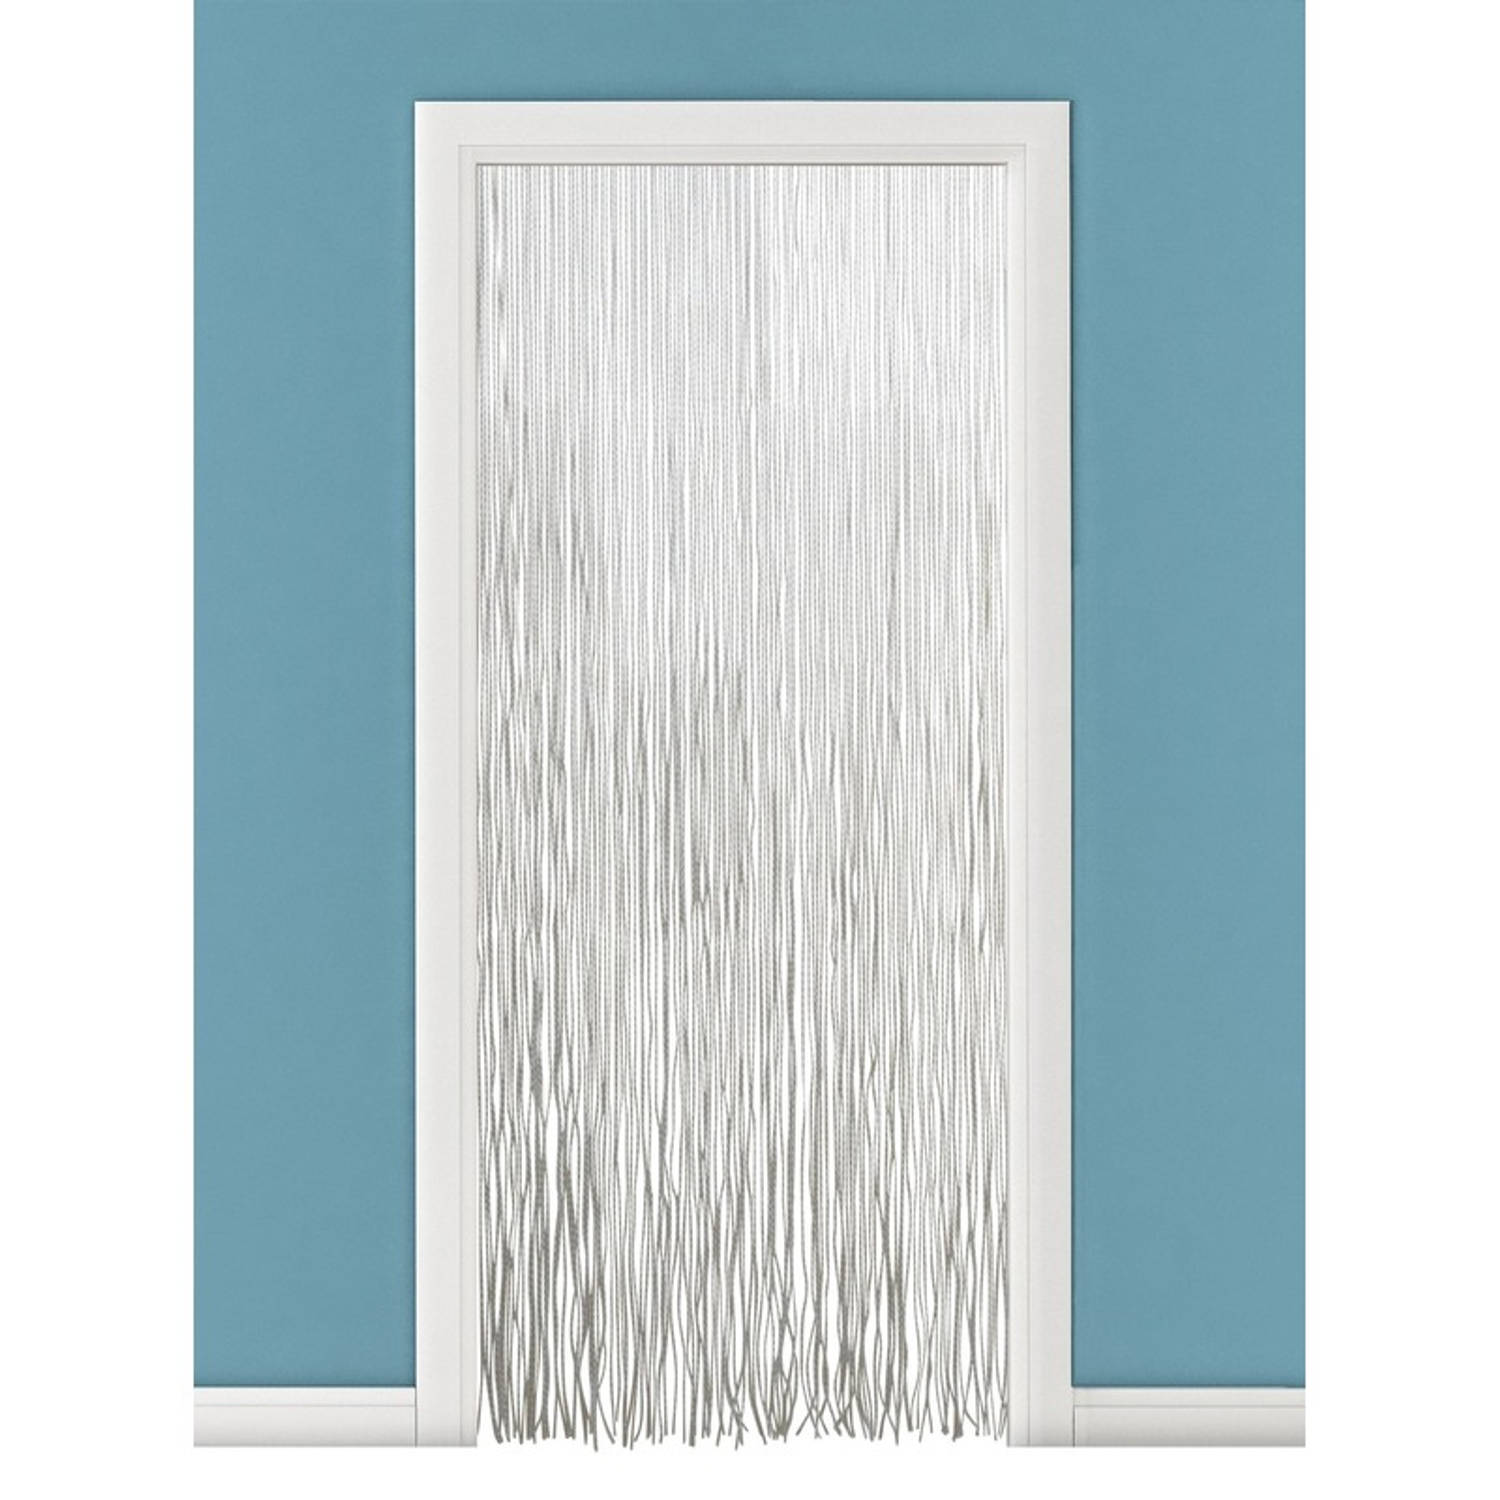 Vliegengordijn-deurgordijn PVC twist wit 90 x 220 cm Insectenwerende vliegengordijnen